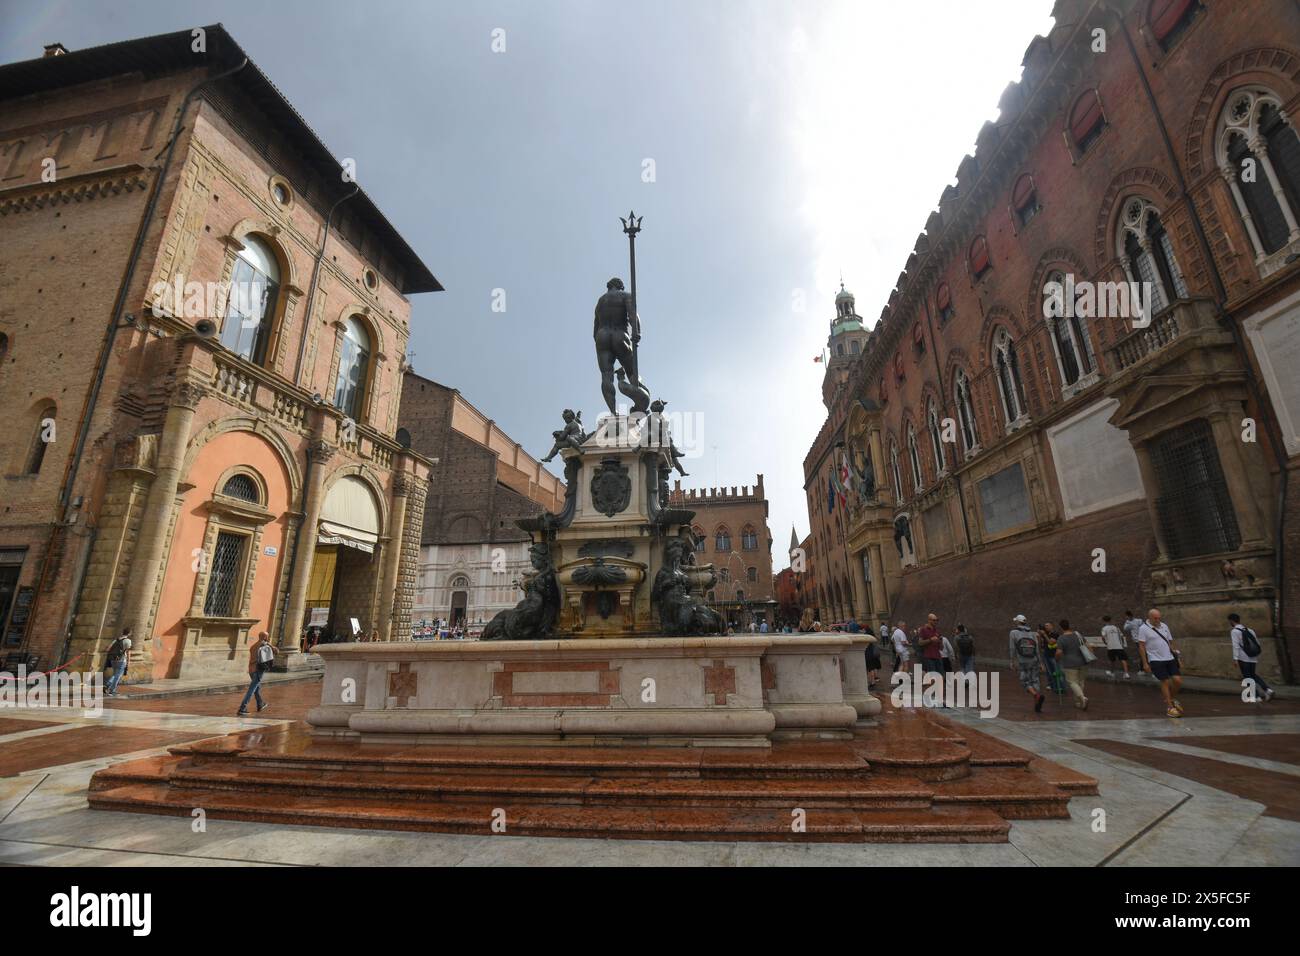 Bologna: Piazza del Nettuno (Neptune Square). Italy. Stock Photo